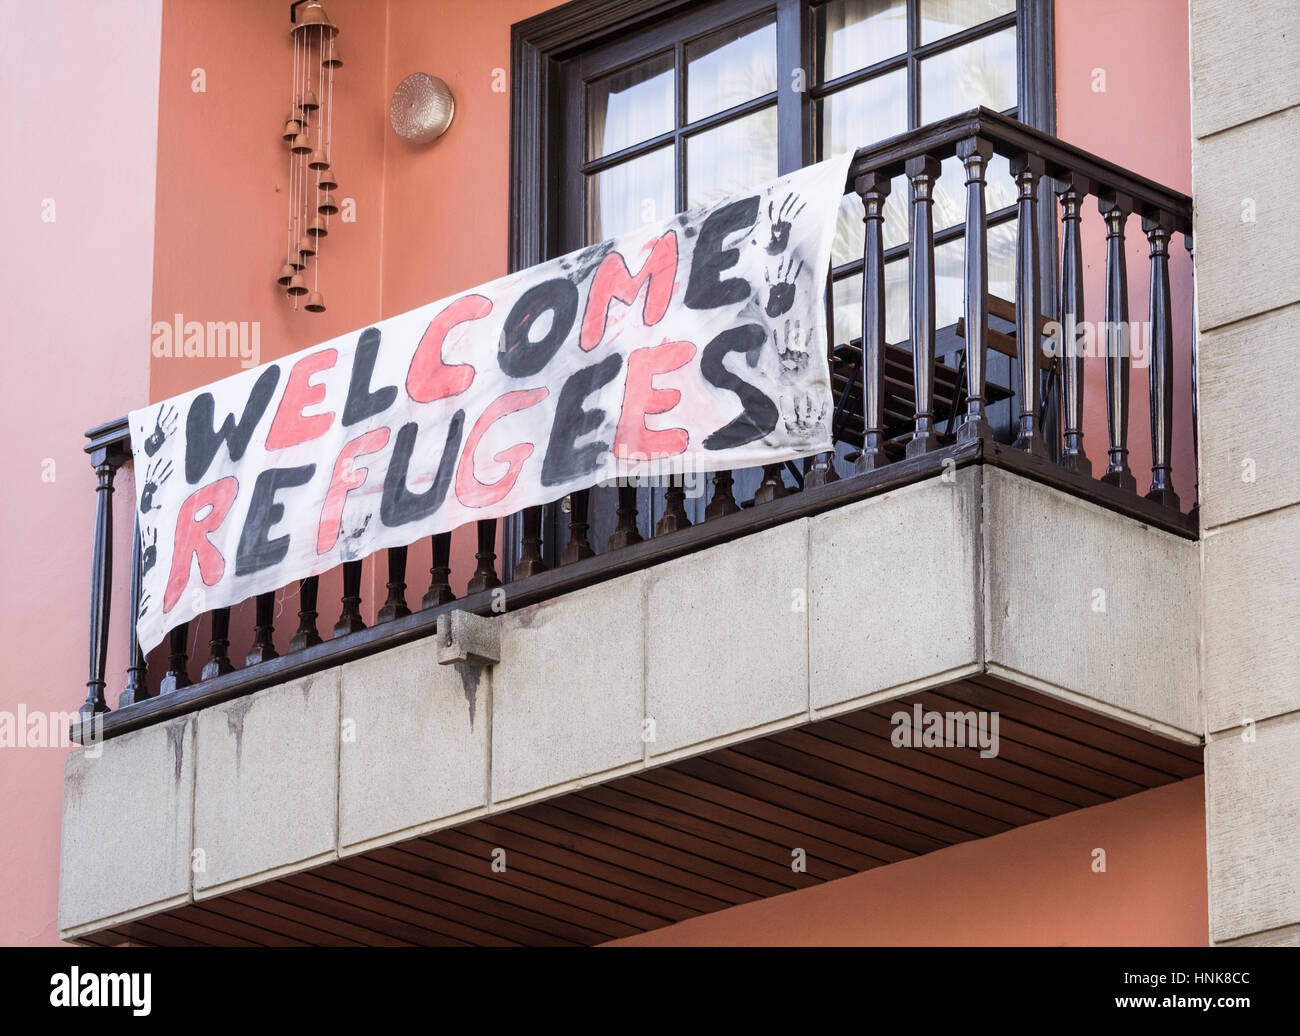 Flüchtlinge Welcom Banner drapiert über Wohnung in Spanien Stockfoto